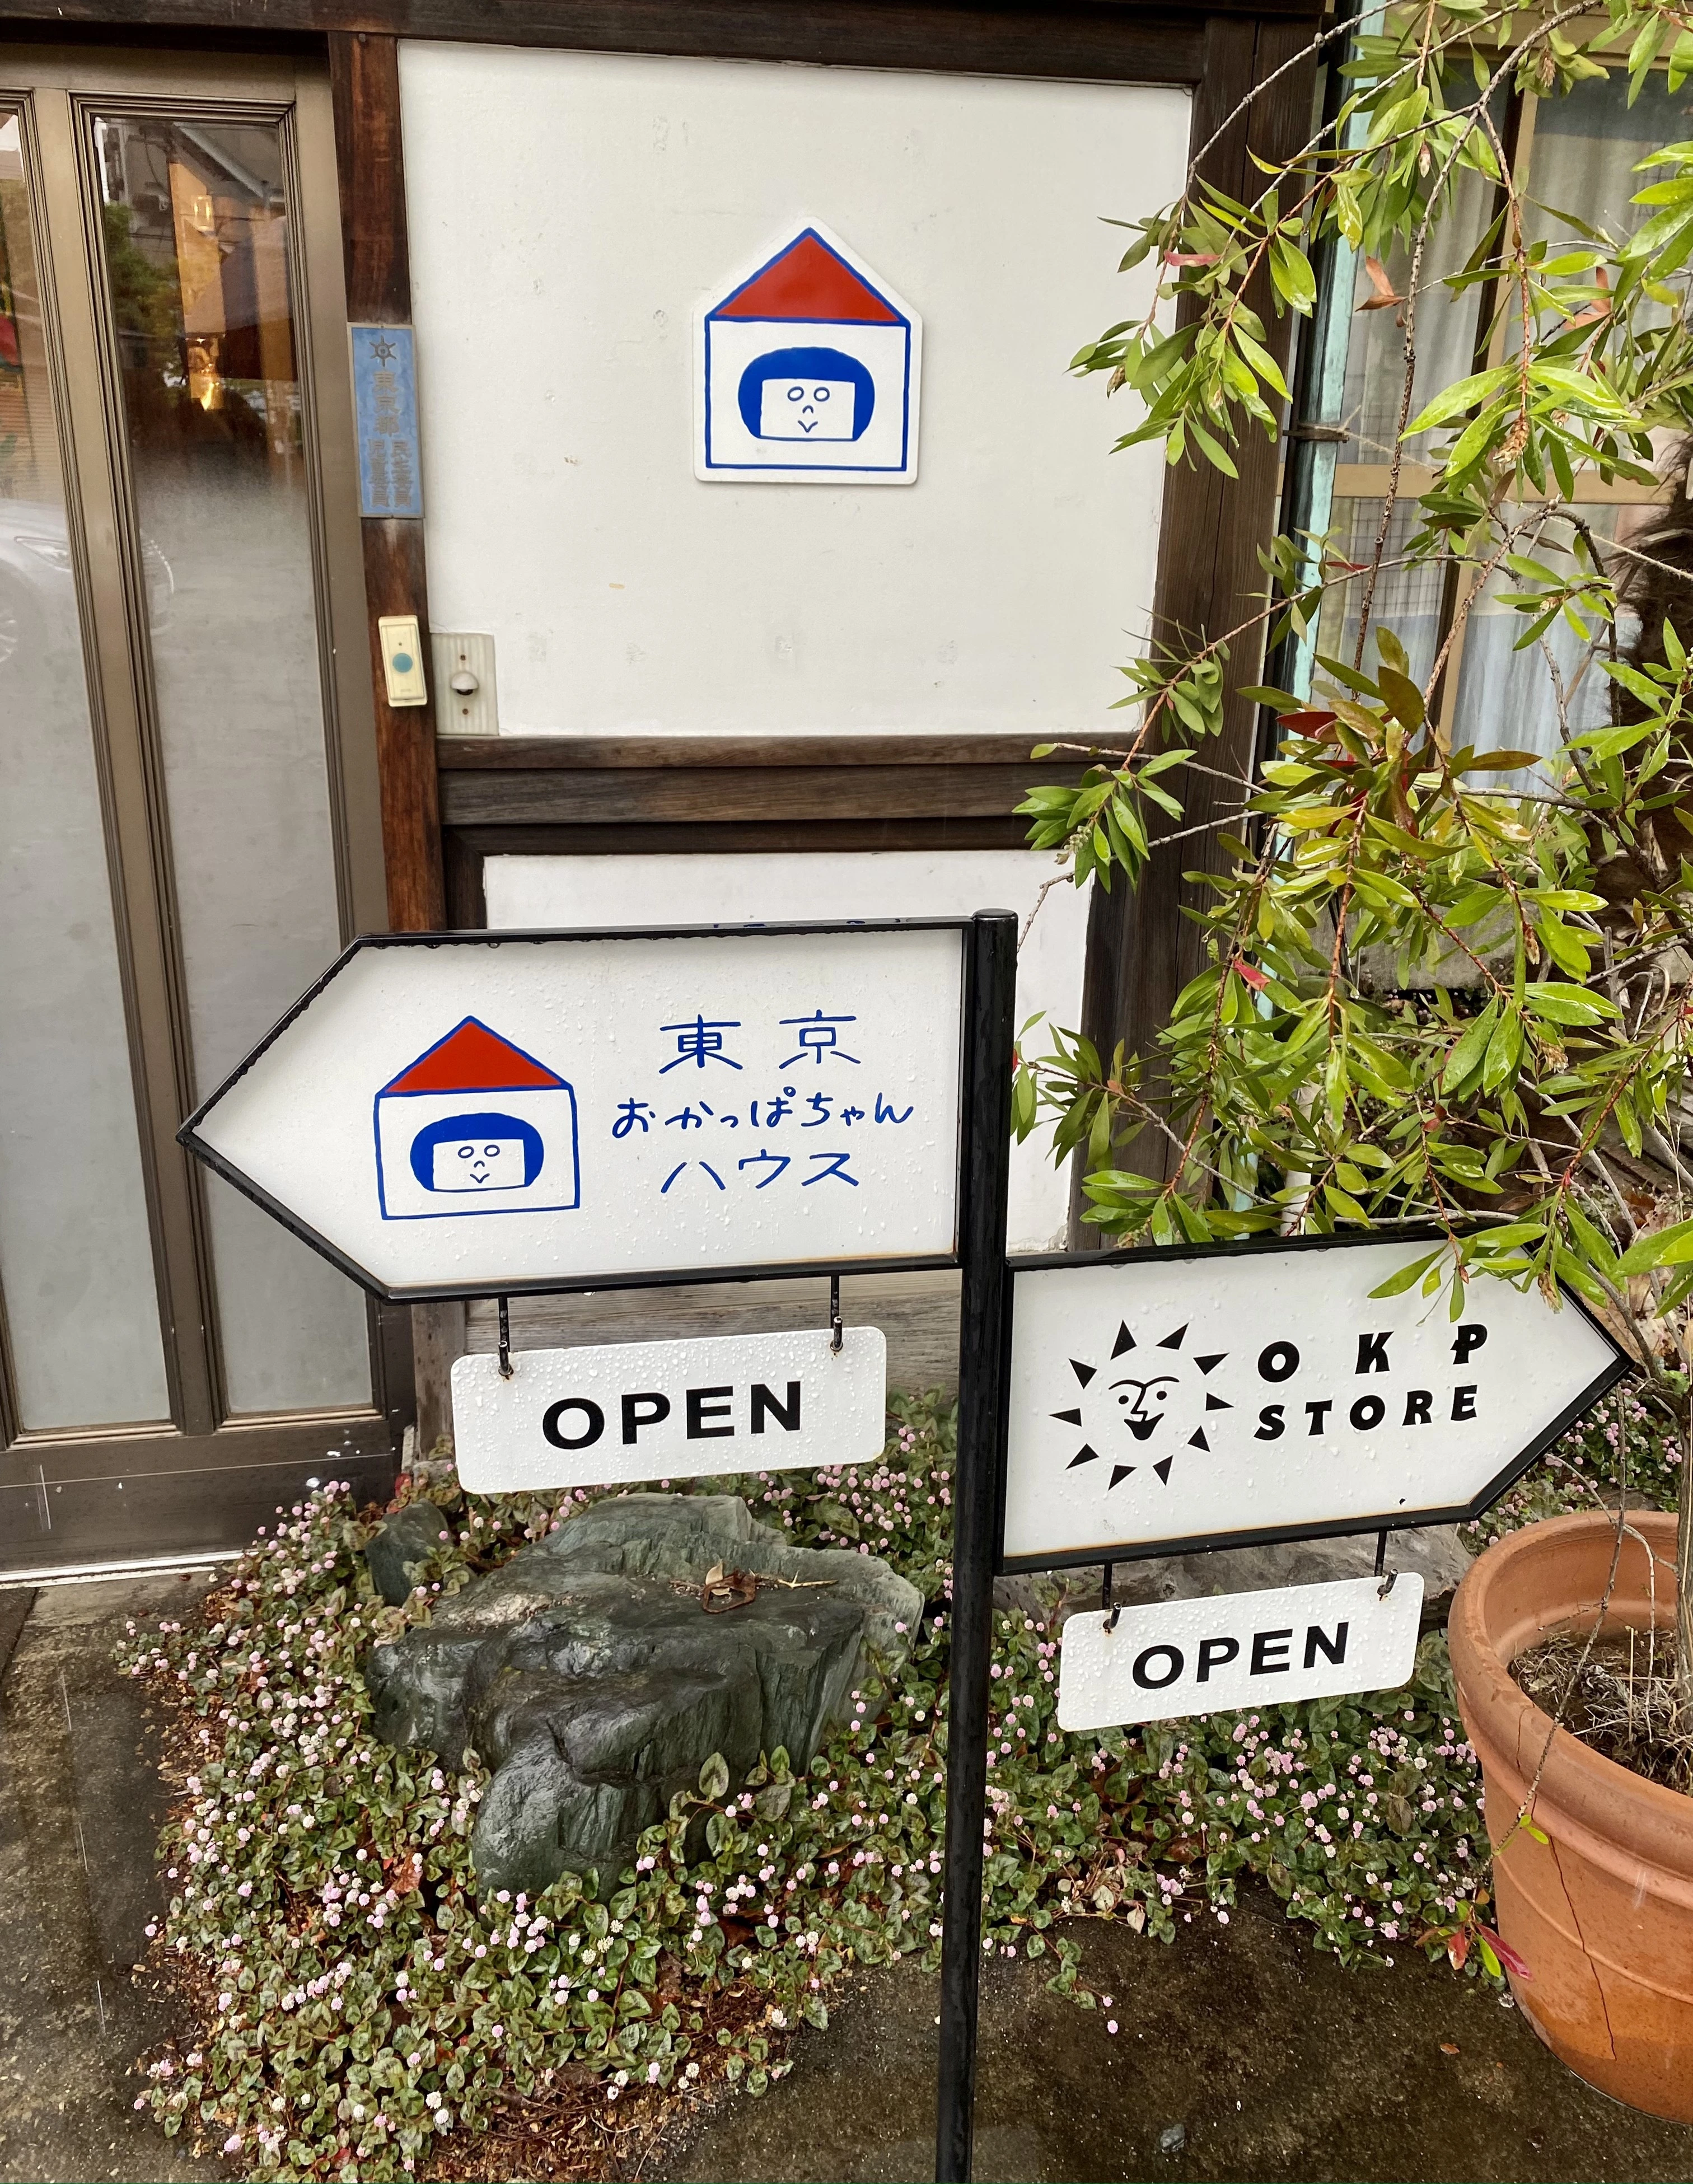 【雨のソロ散歩】西武線・石神井エリアで「ハンドニット」と「カフェ」をめぐる午後_1_2-1